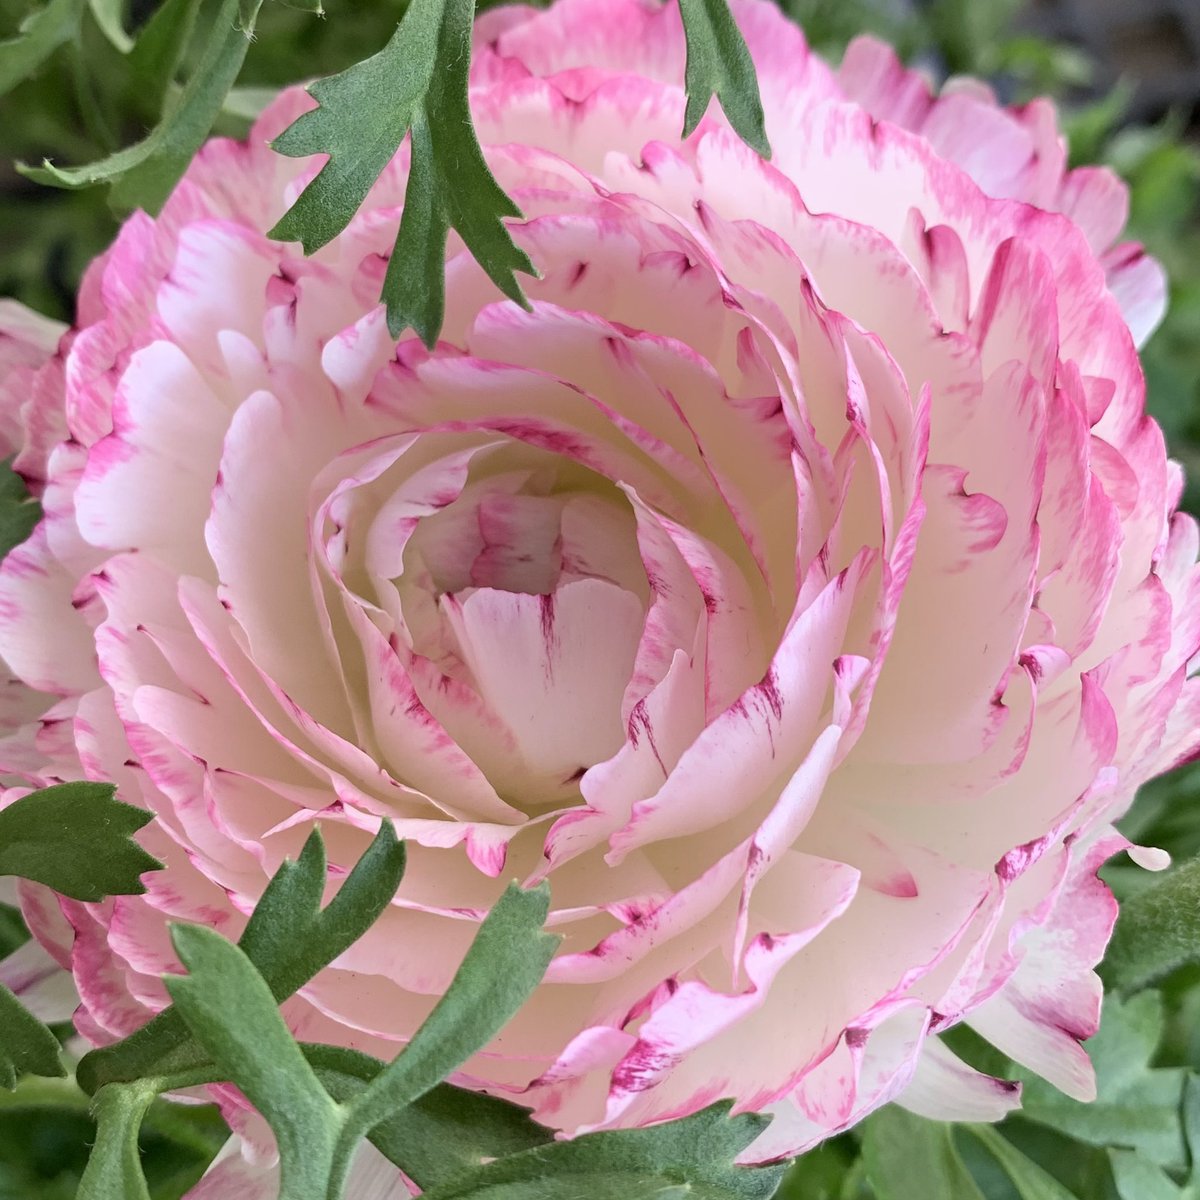 おはよう御座います(*´▽｀)ﾉﾉ 🌸🌸🌸花の便り🌸🌸🌸 最近のラナンキュラスは品種改良も進み、紙のように薄い花びらが幾重にも重なった咲き方や色数がとても魅力的です